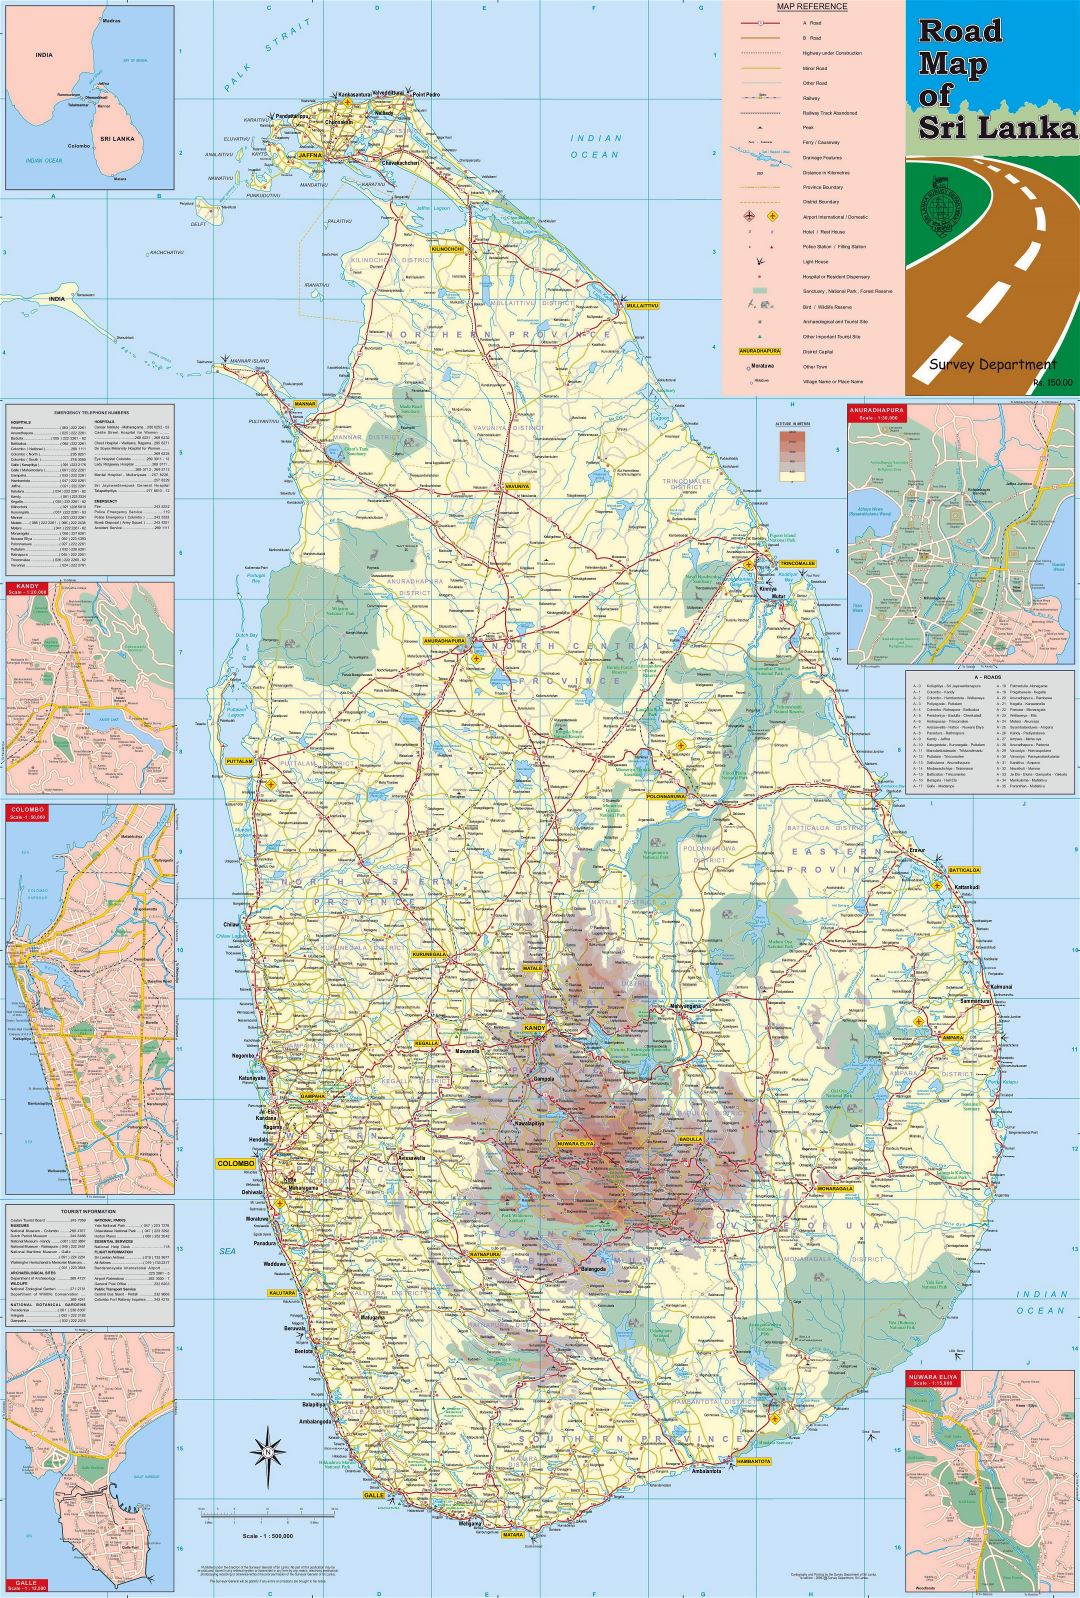 Большая детальная карта дорог и высот Шри-Ланки с другими пометками